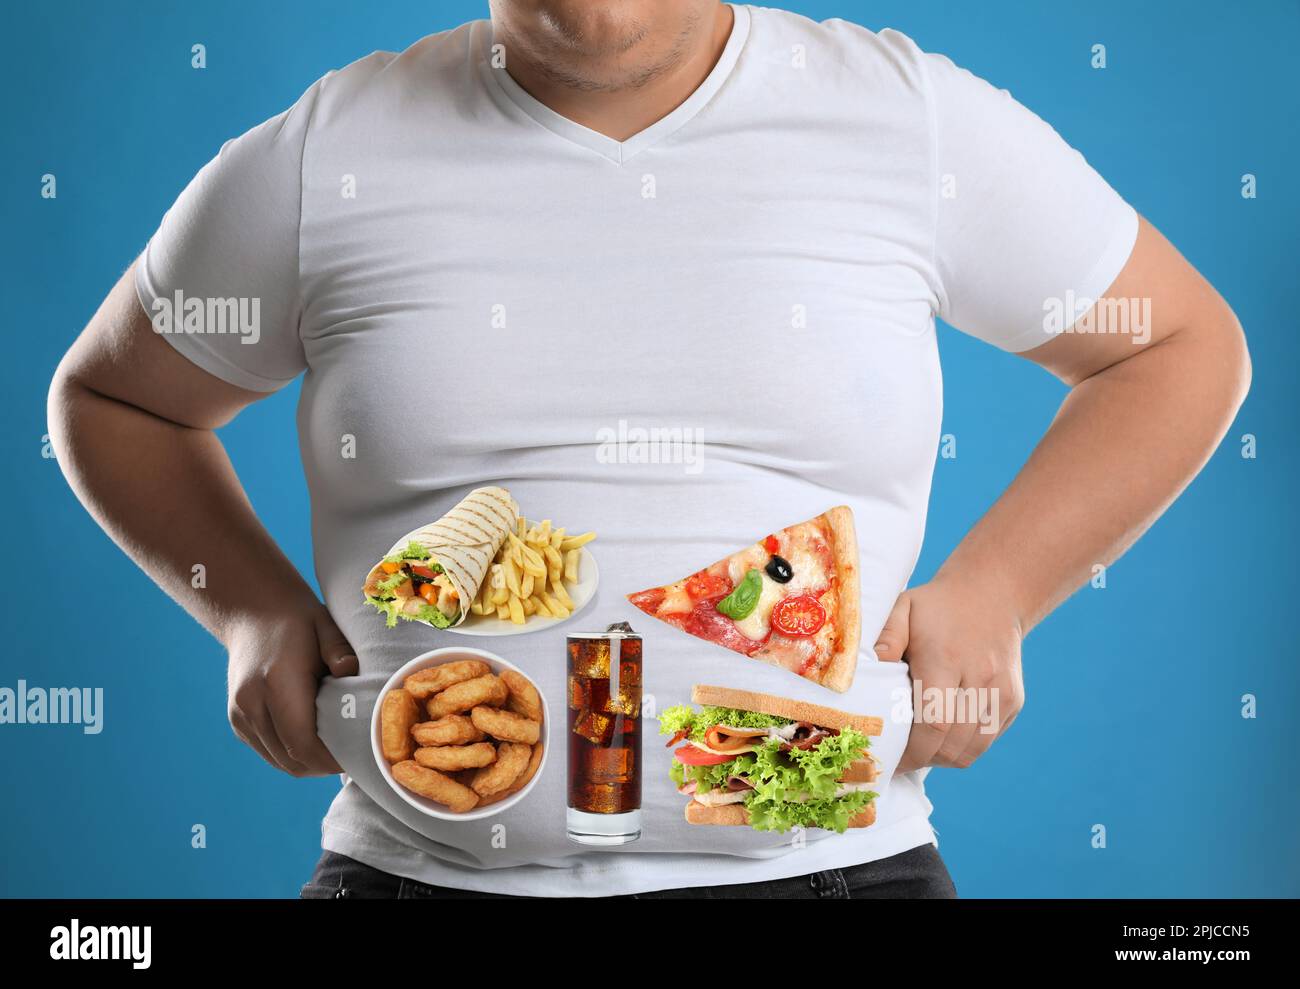 Uomo sovrappeso in maglietta stretta con immagini di diversi cibi malsani sul suo ventre contro sfondo azzurro Foto Stock